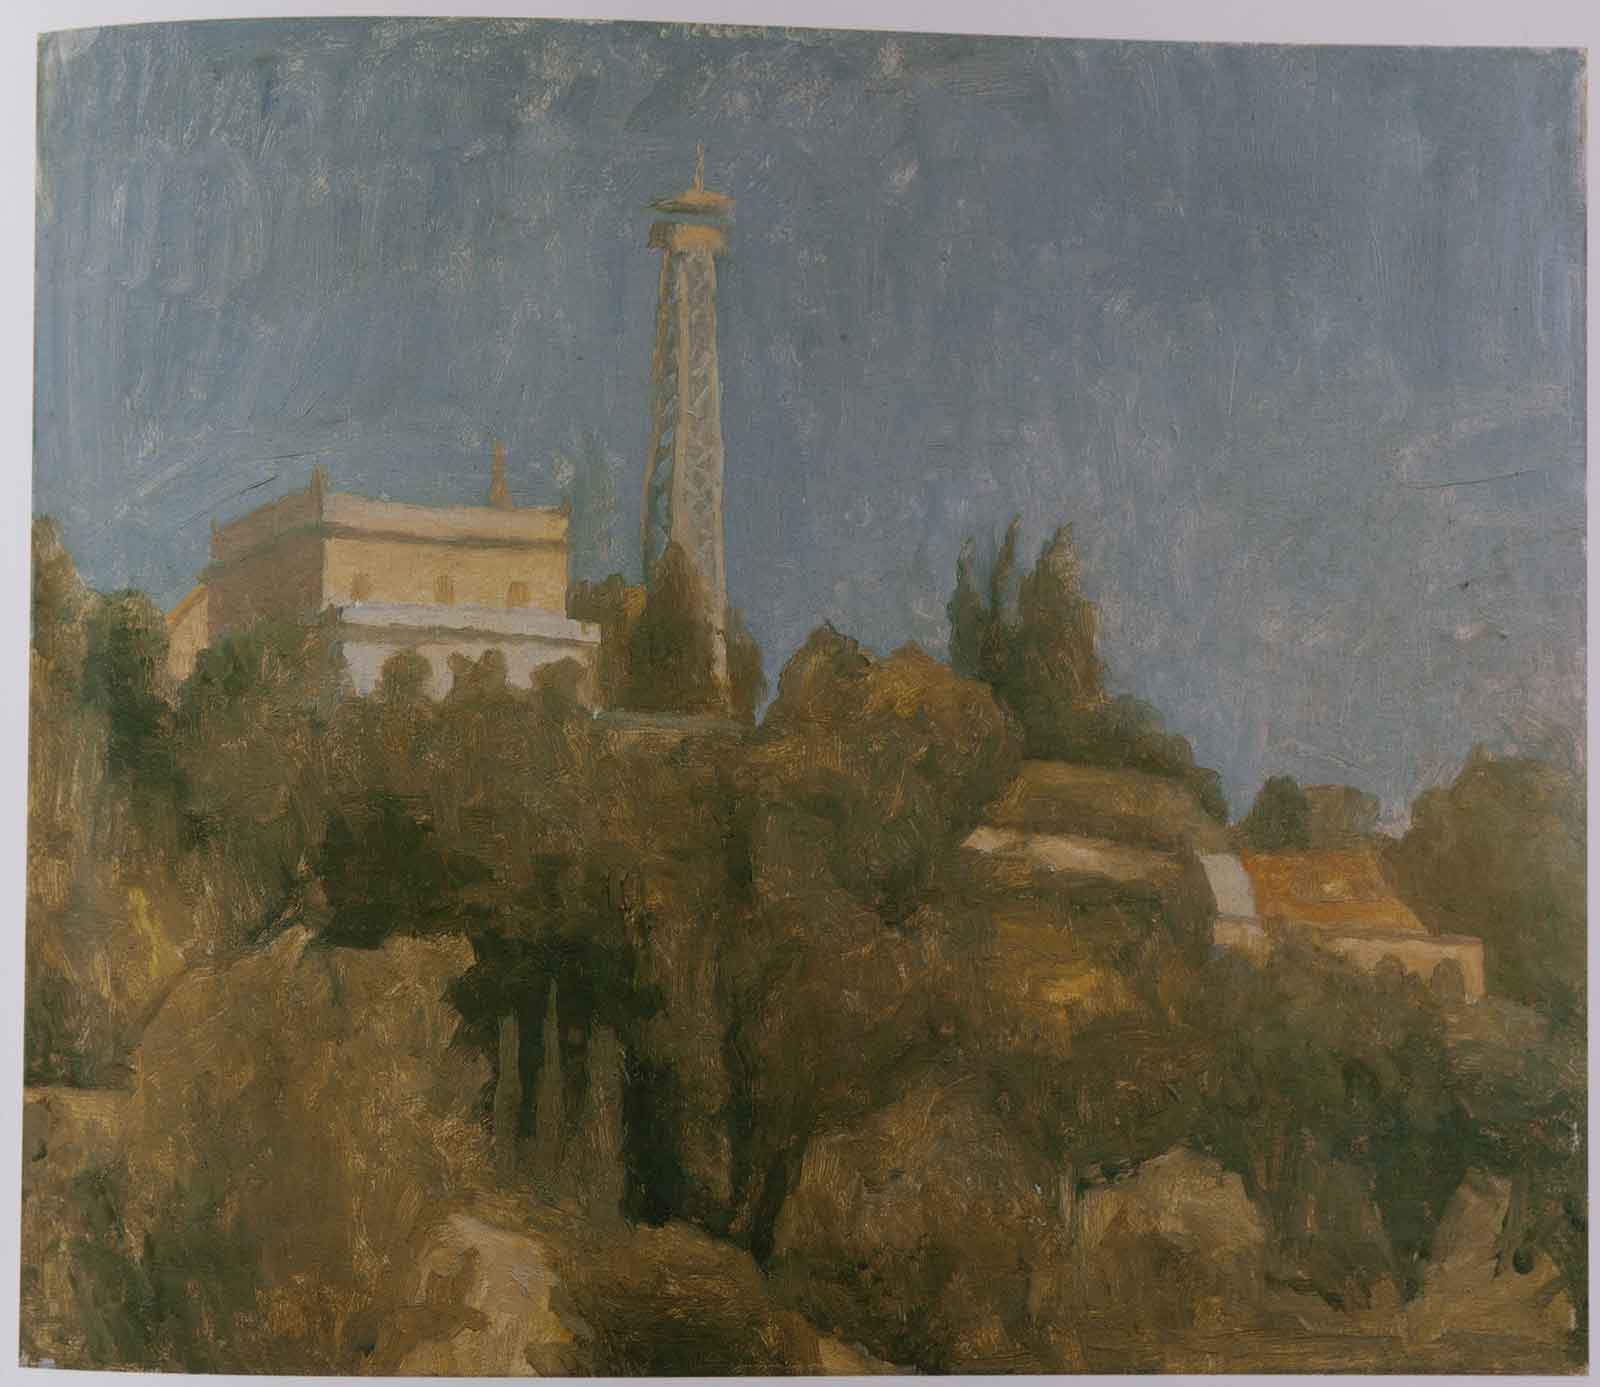 Giorgio Morandi, Landscape, 1922, Oil painting on canvas